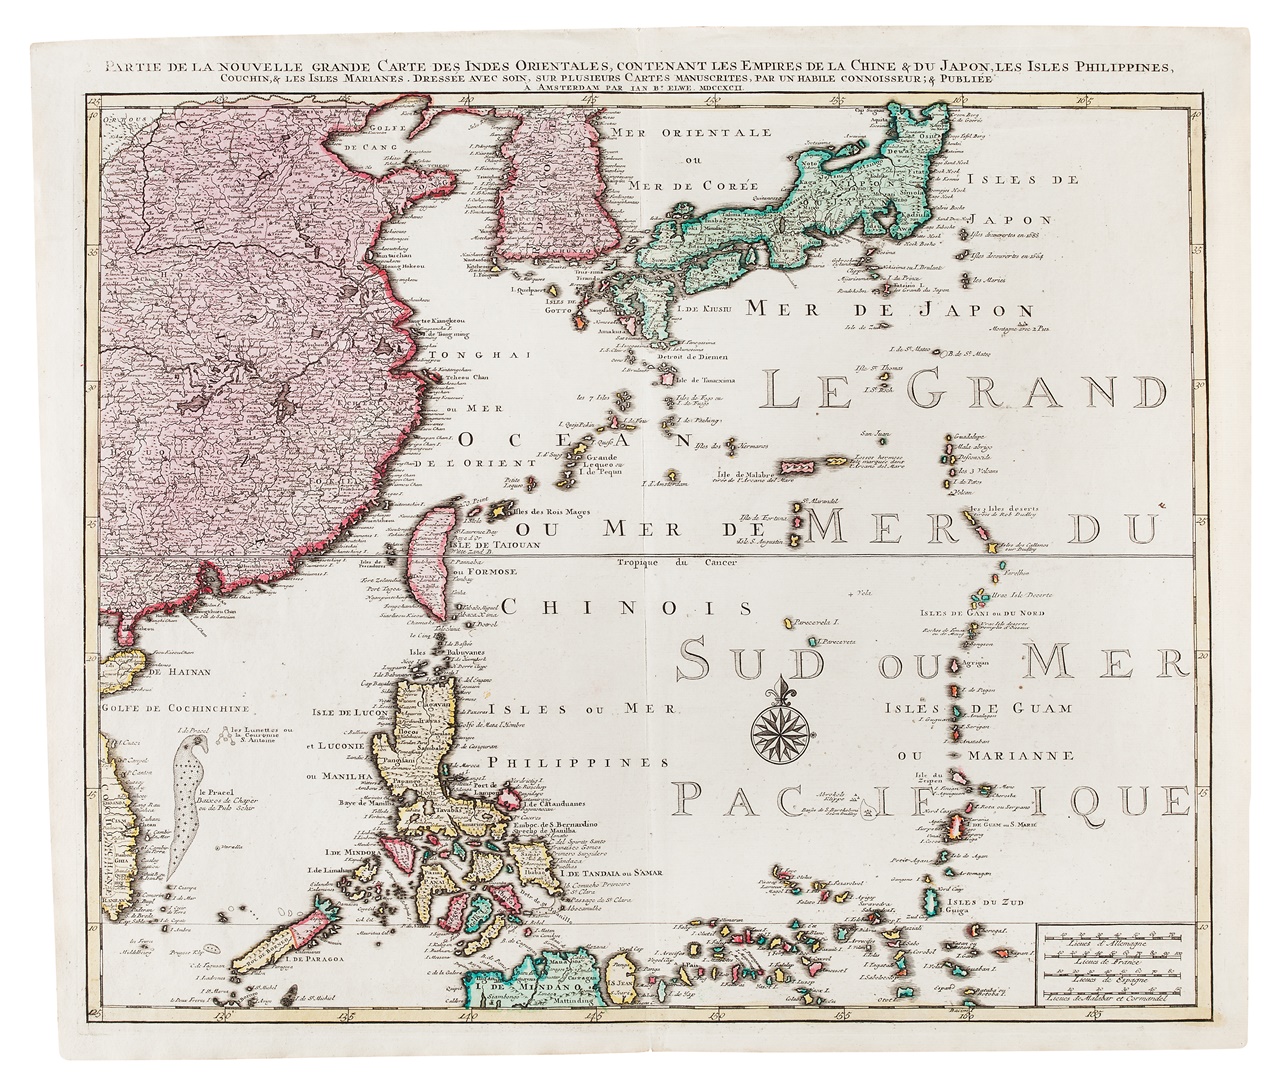 동북아역사재단 독도체험관에서 4월 30일까지 전시되는 '이달의 고지도' 1792년 네델란드 제작 '웰웨의 동아시아 지도'. 사진 동북아역사재단.